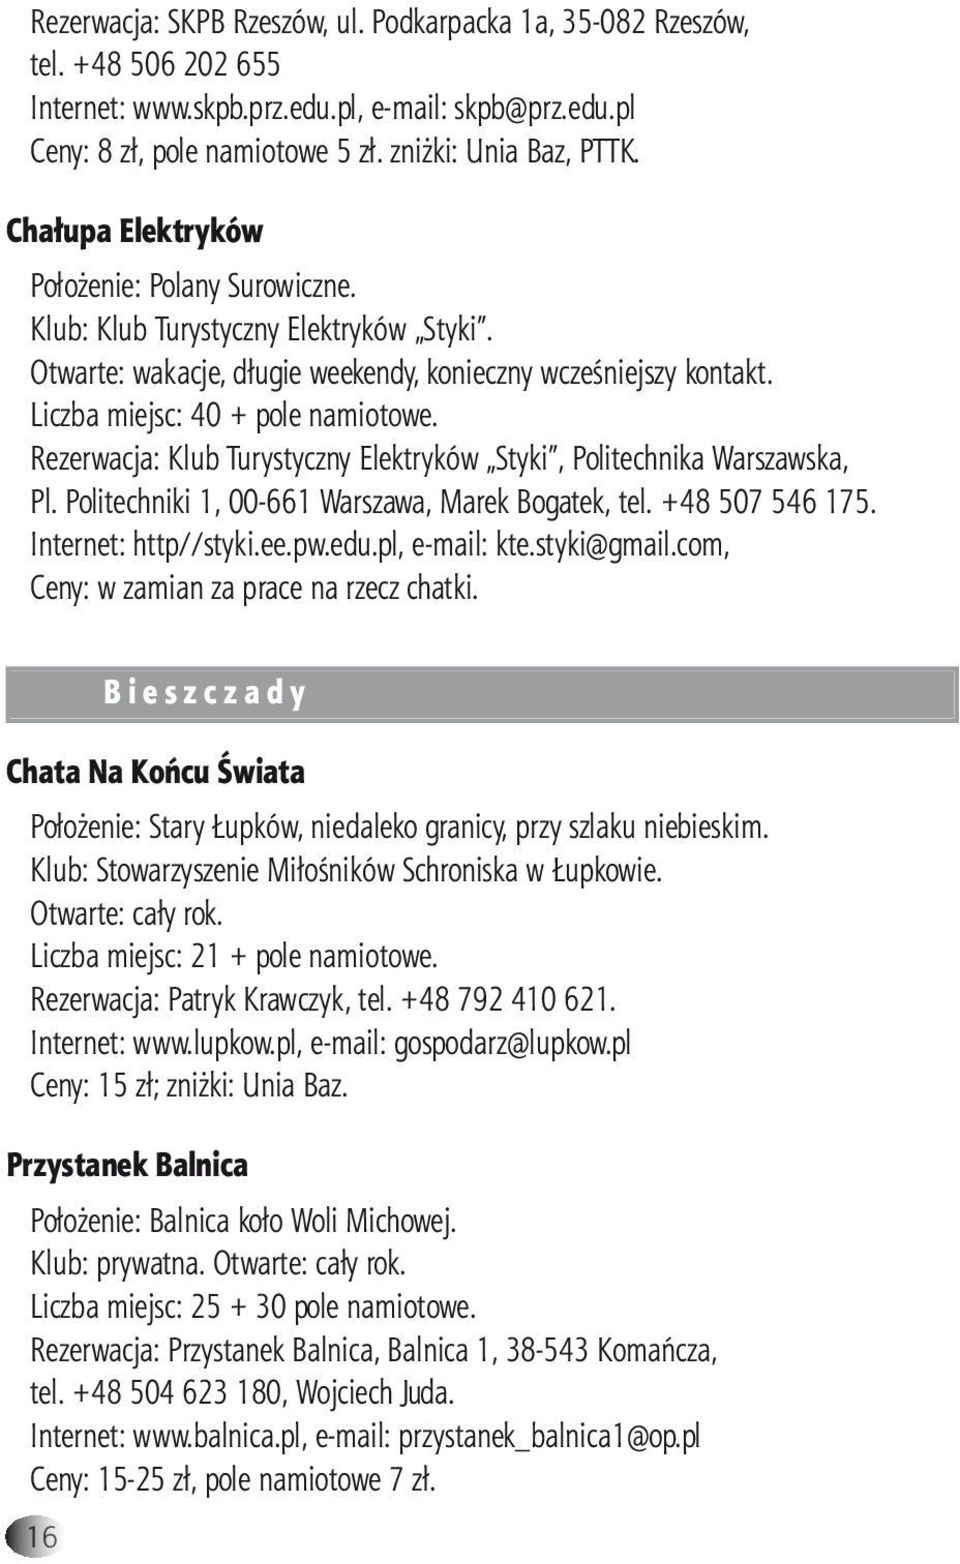 Rezerwacja: Klub Turystyczny Elektryków Styki, Politechnika Warszawska, Pl. Politechniki 1, 00-661 Warszawa, Marek Bogatek, tel. +48 507 546 175. Internet: http//styki.ee.pw.edu.pl, e-mail: kte.